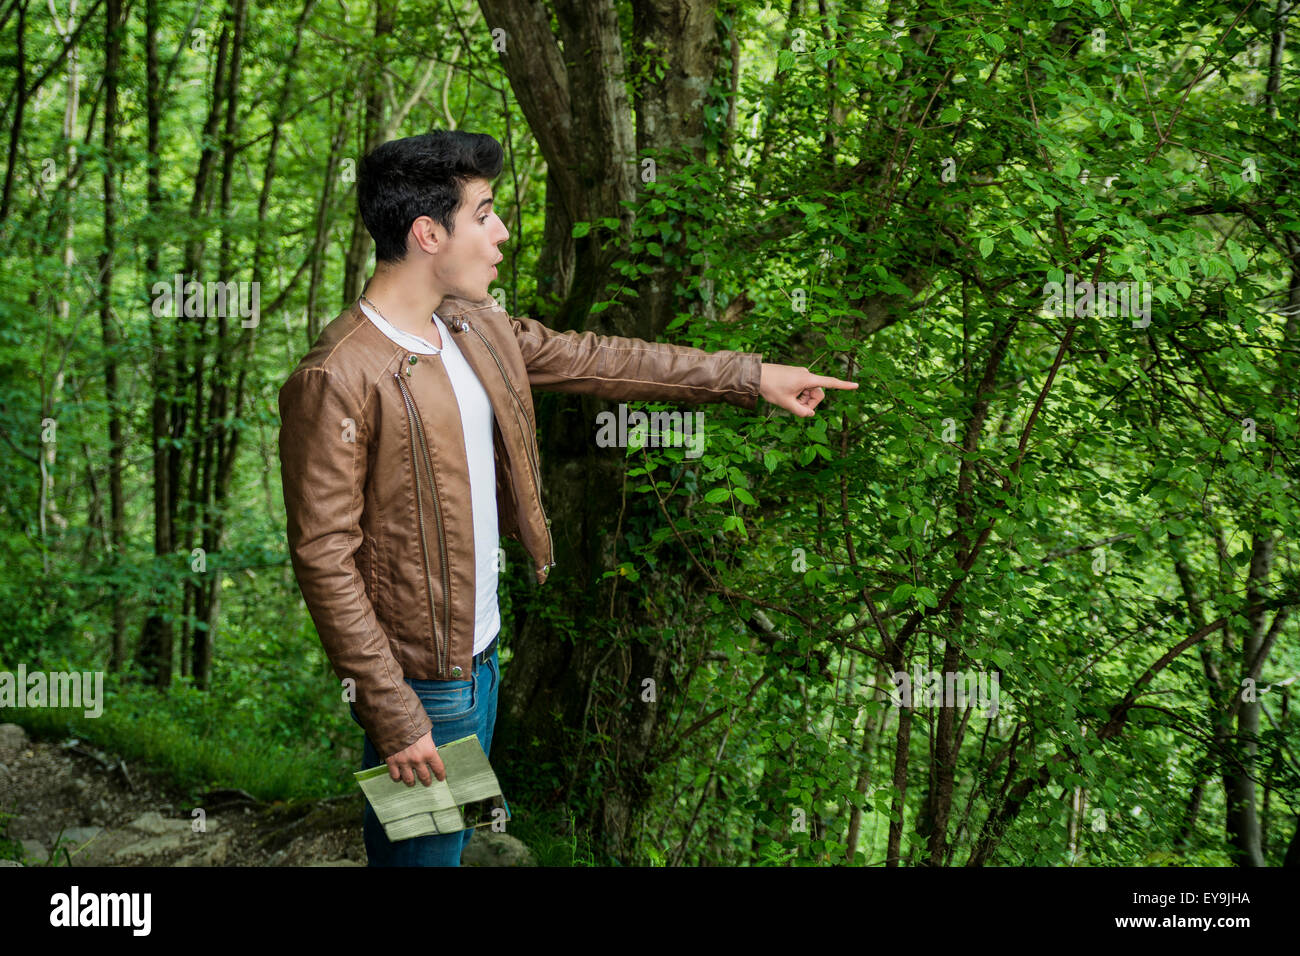 Stupito Cerca giovane uomo rivolto verso la distanza in zona boscosa, guardando qualcosa di stupefacente mentre sulla passeggiata attraverso la foresta Foto Stock